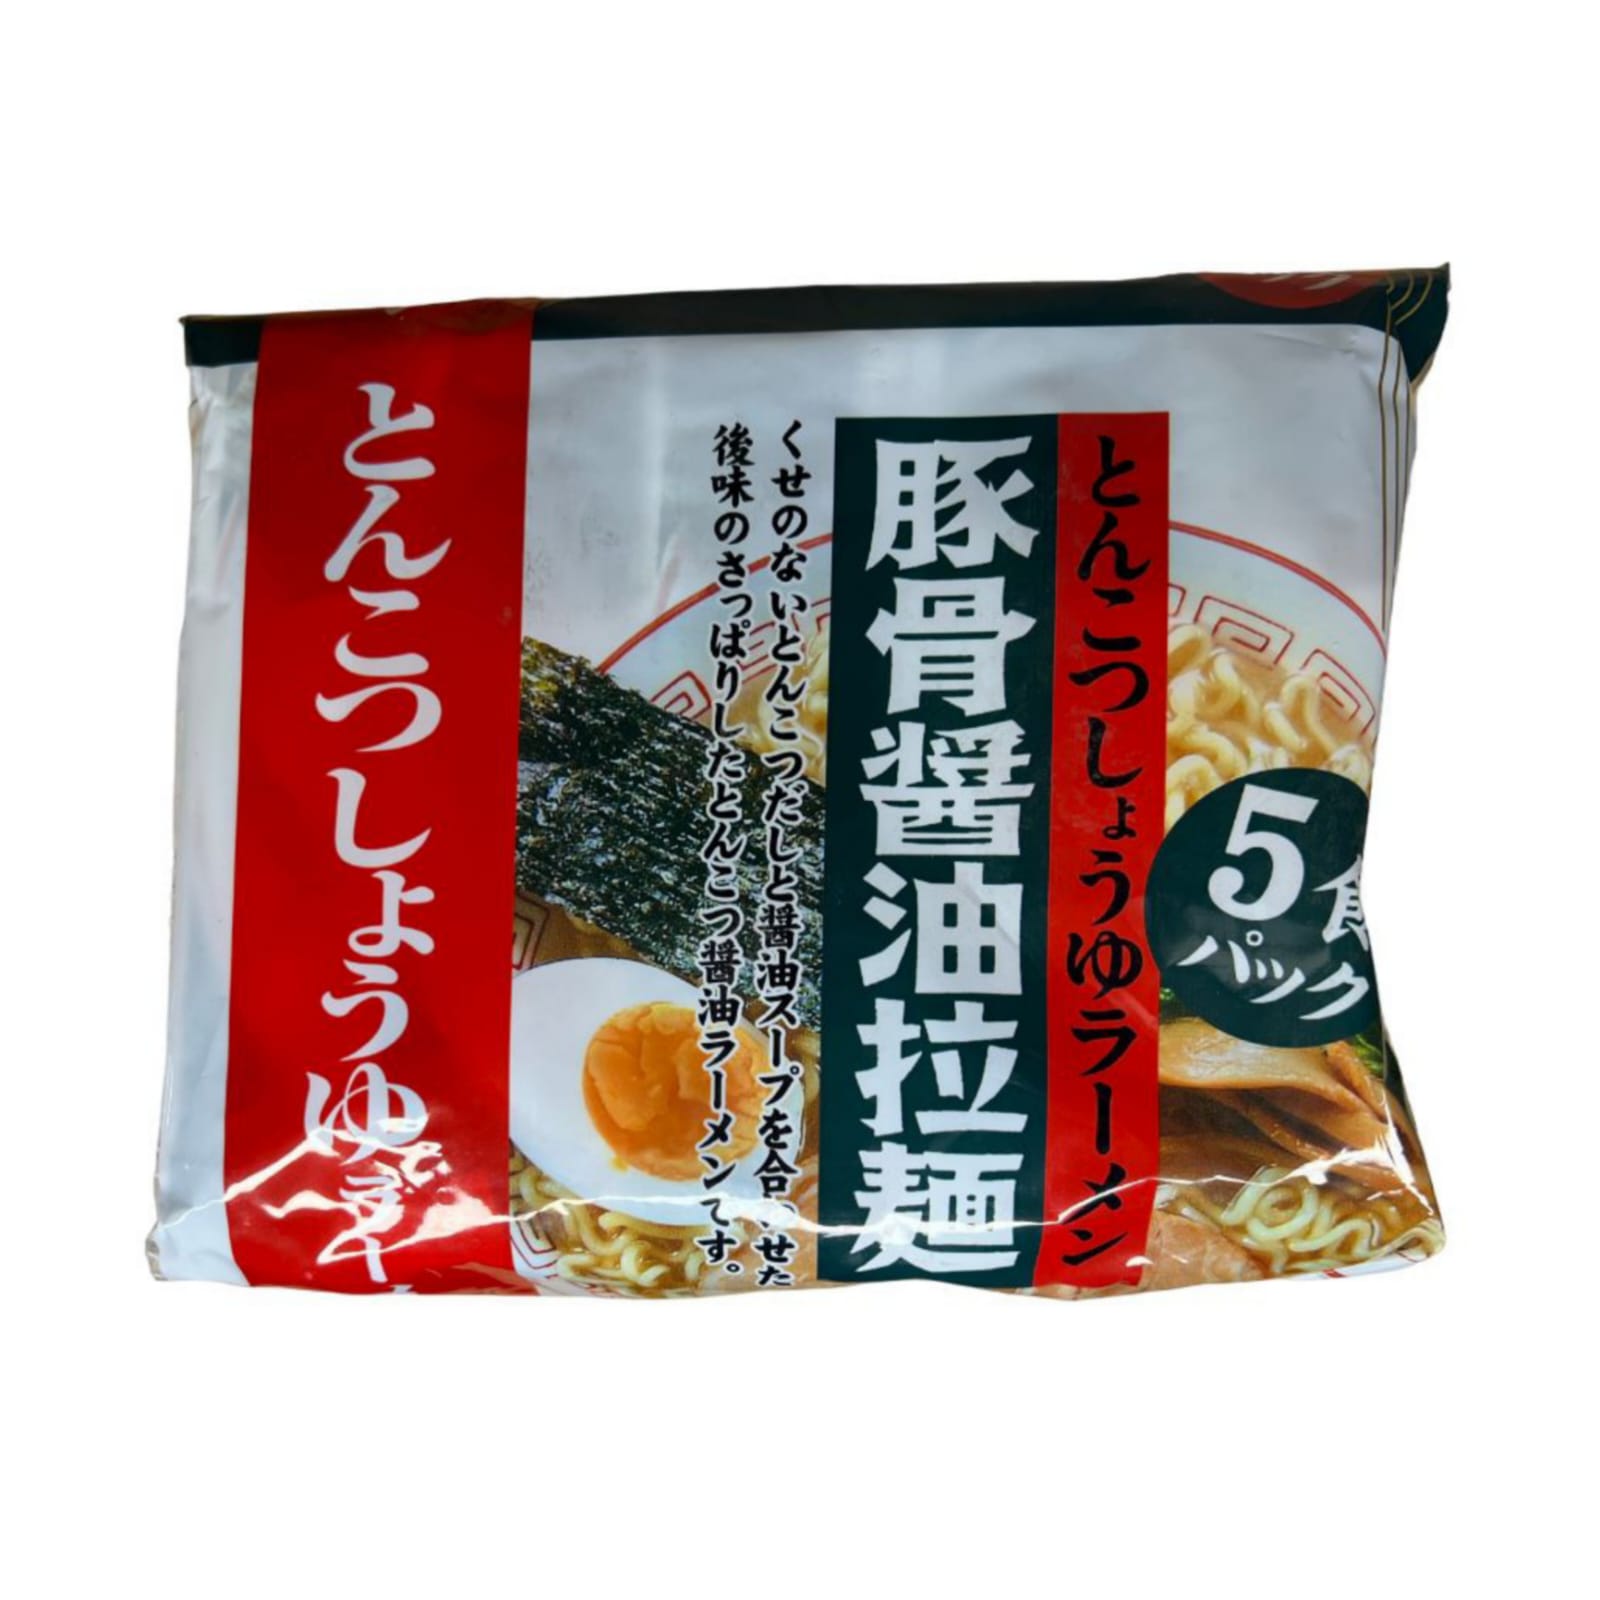 Лапша быстрого приготовления Sunaoshi с супом из свинины Тонкацу, 83 г, 5 шт